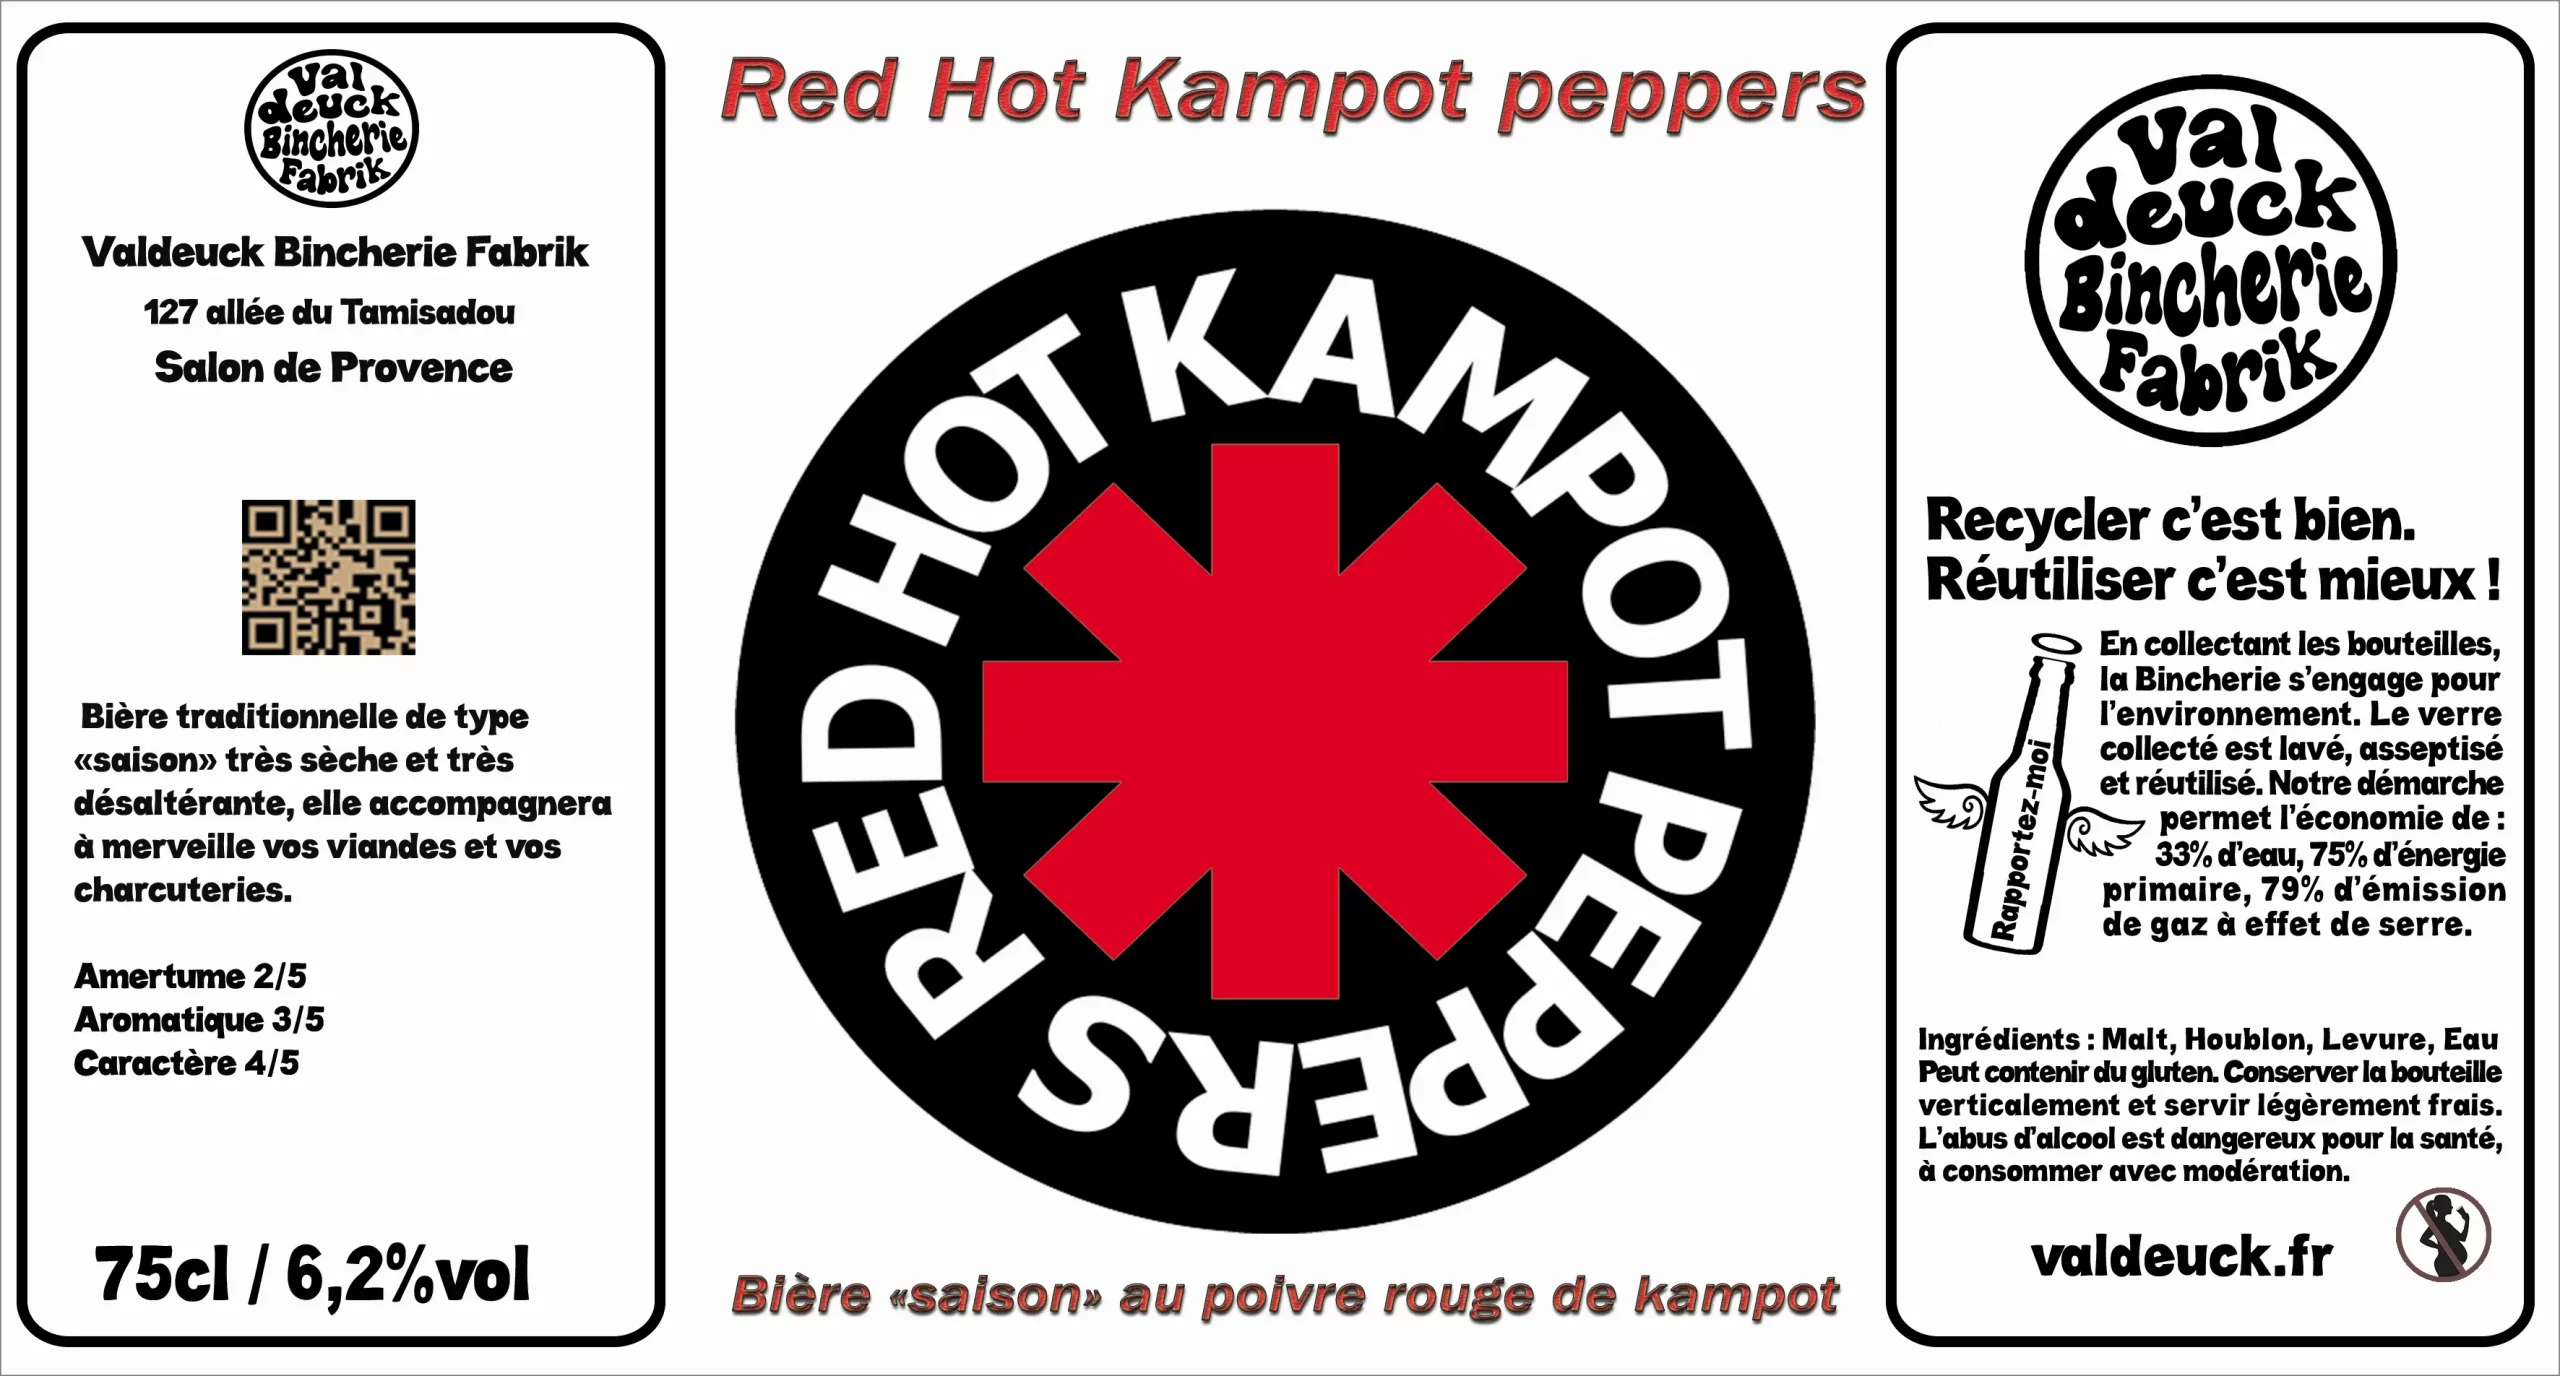 Red Hot Kampot Pepper (75) valdeuck bincherie fabrik salon de provence